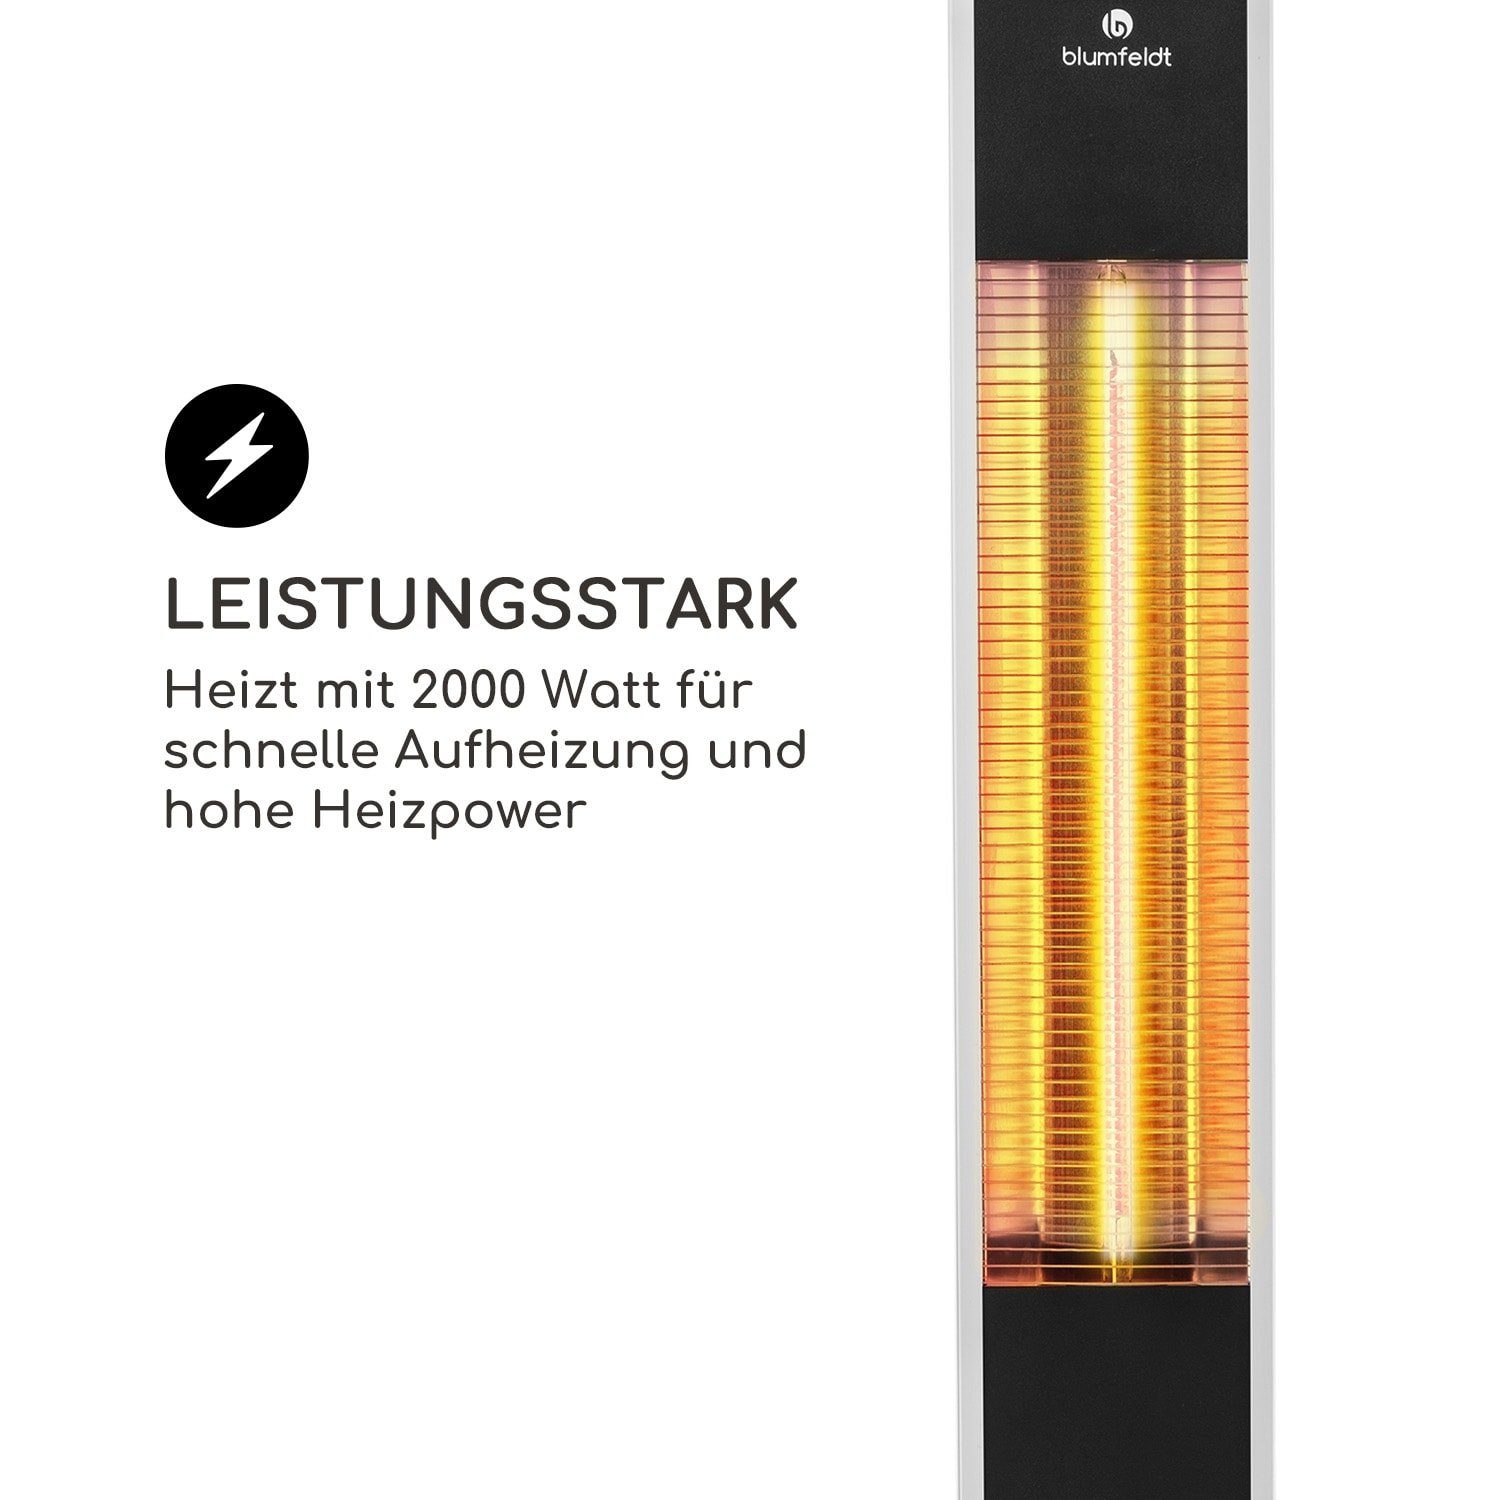 blumfeldt Terrassenstrahler Heat Guru, W, Standgerät Infrarot Infrarotheizung 2000 elektrisch Terrasse Heizstrahler